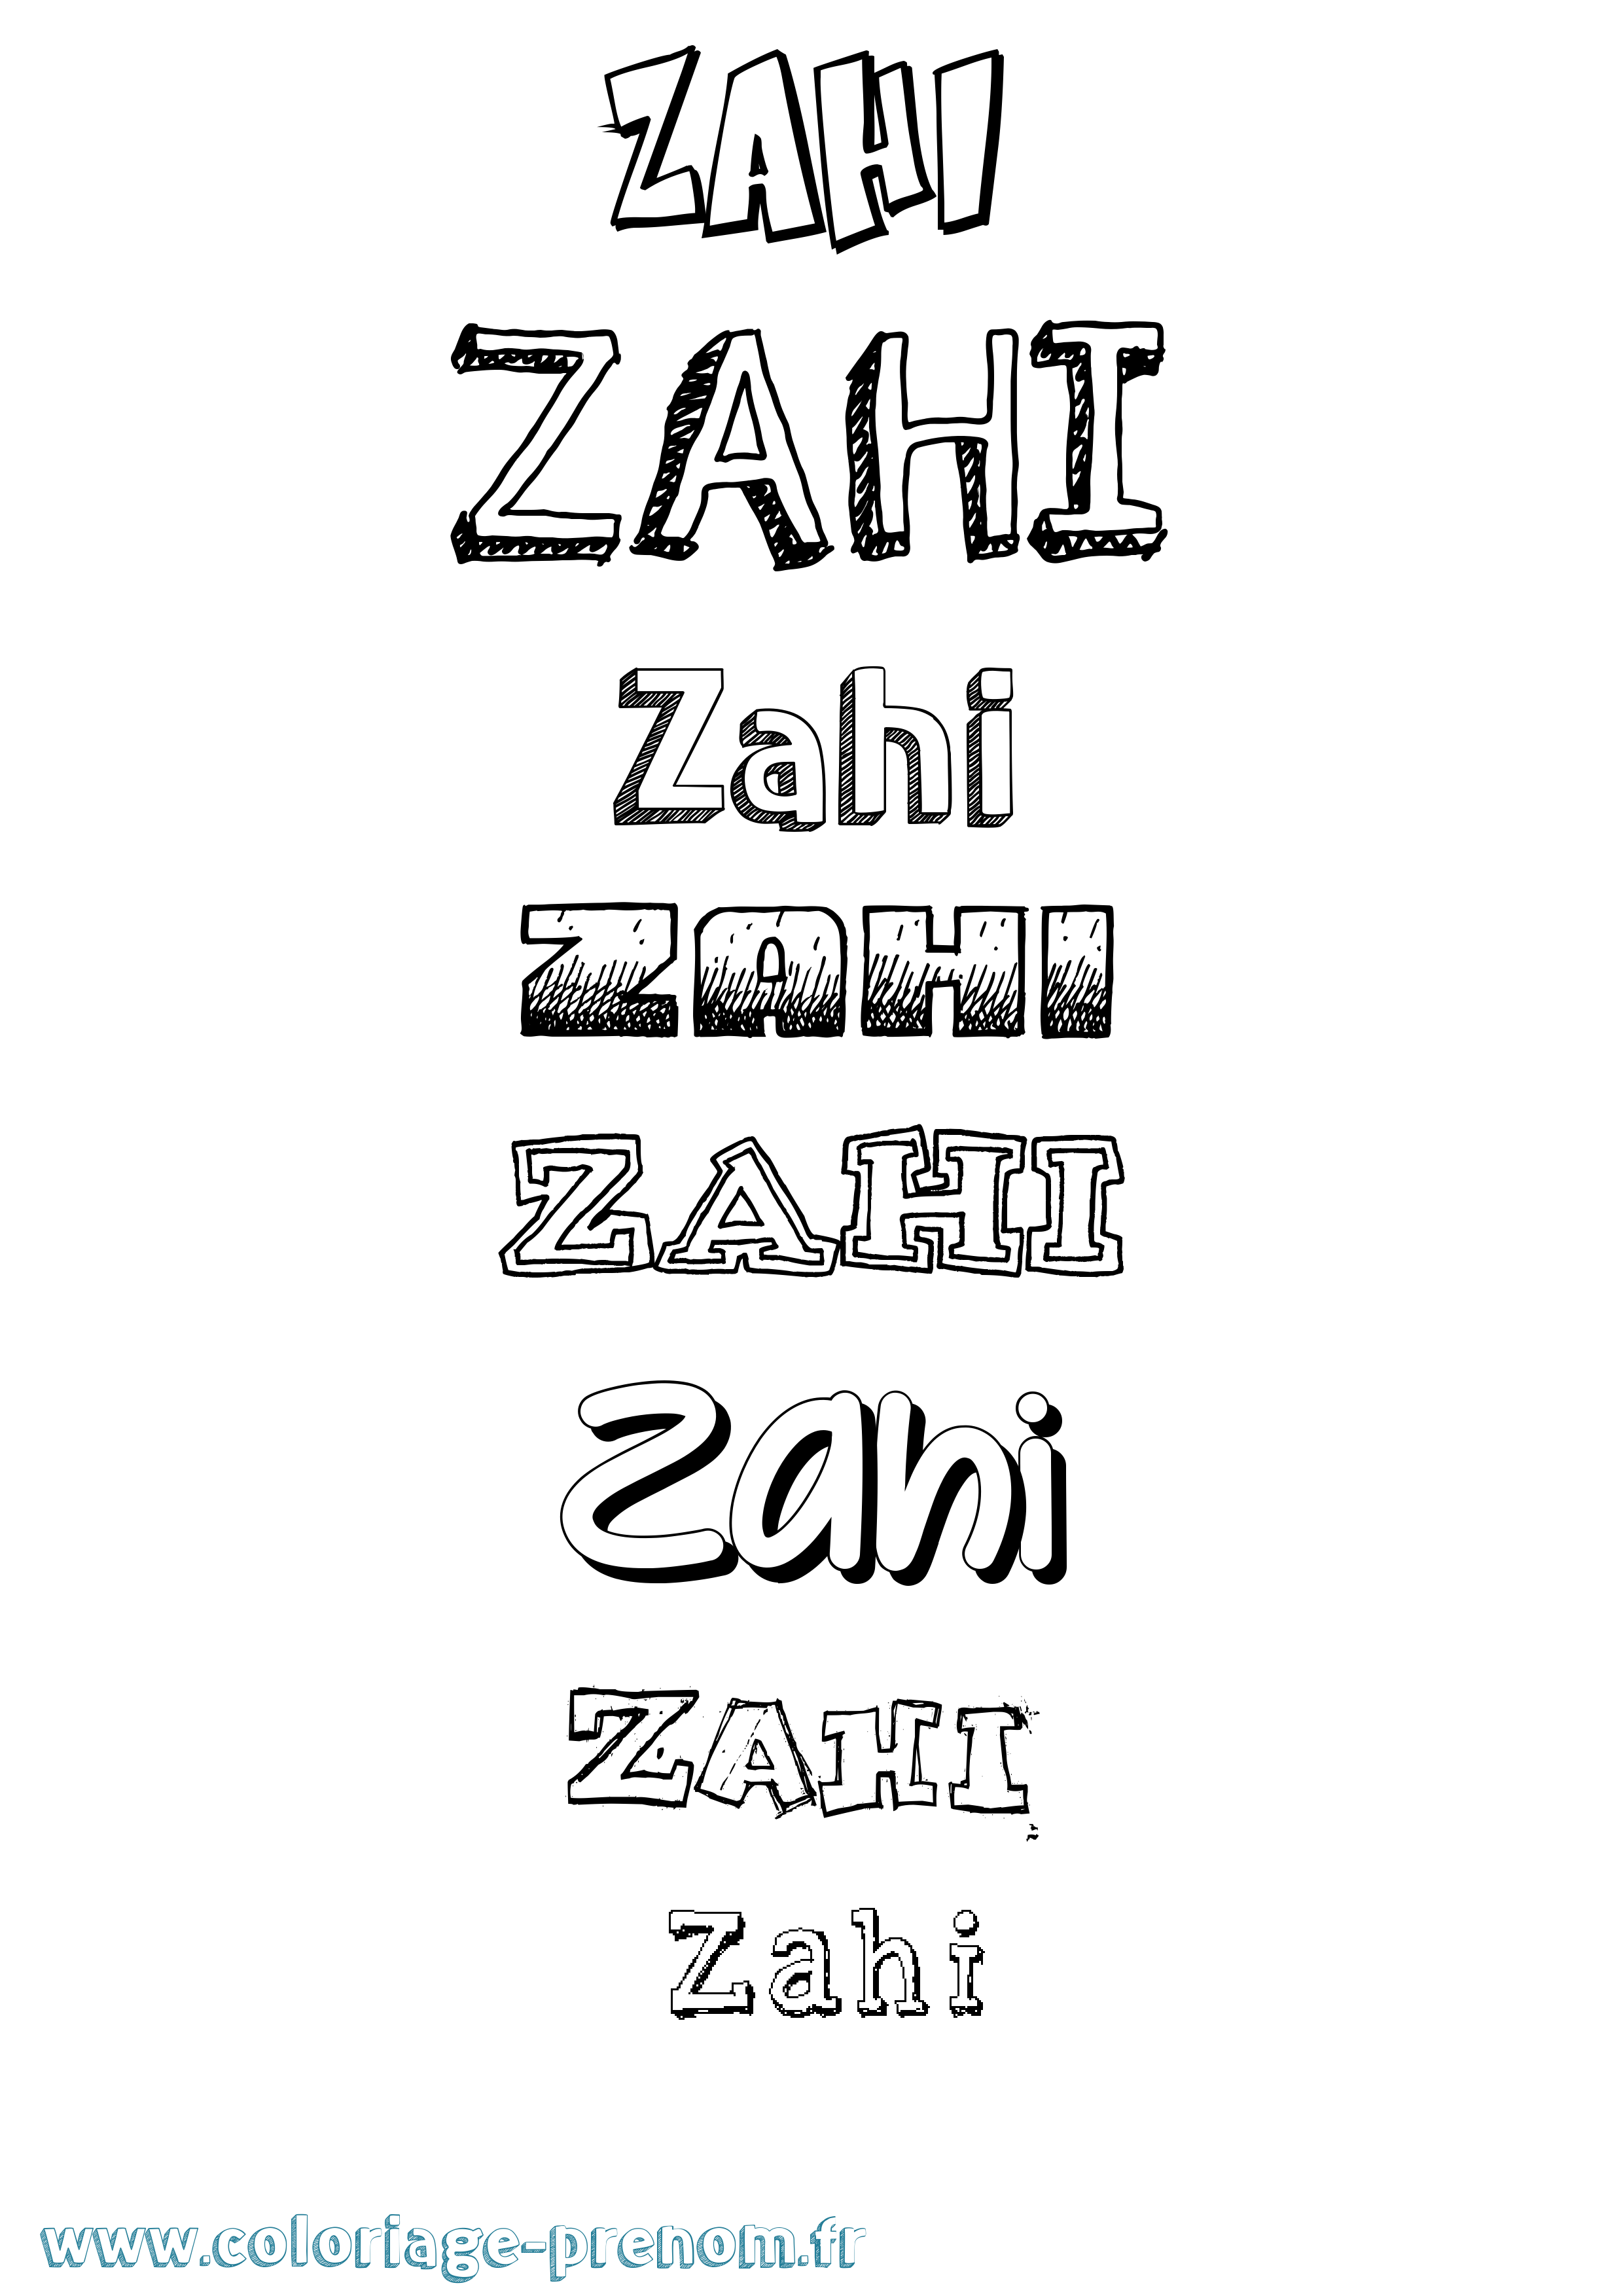 Coloriage prénom Zahi Dessiné